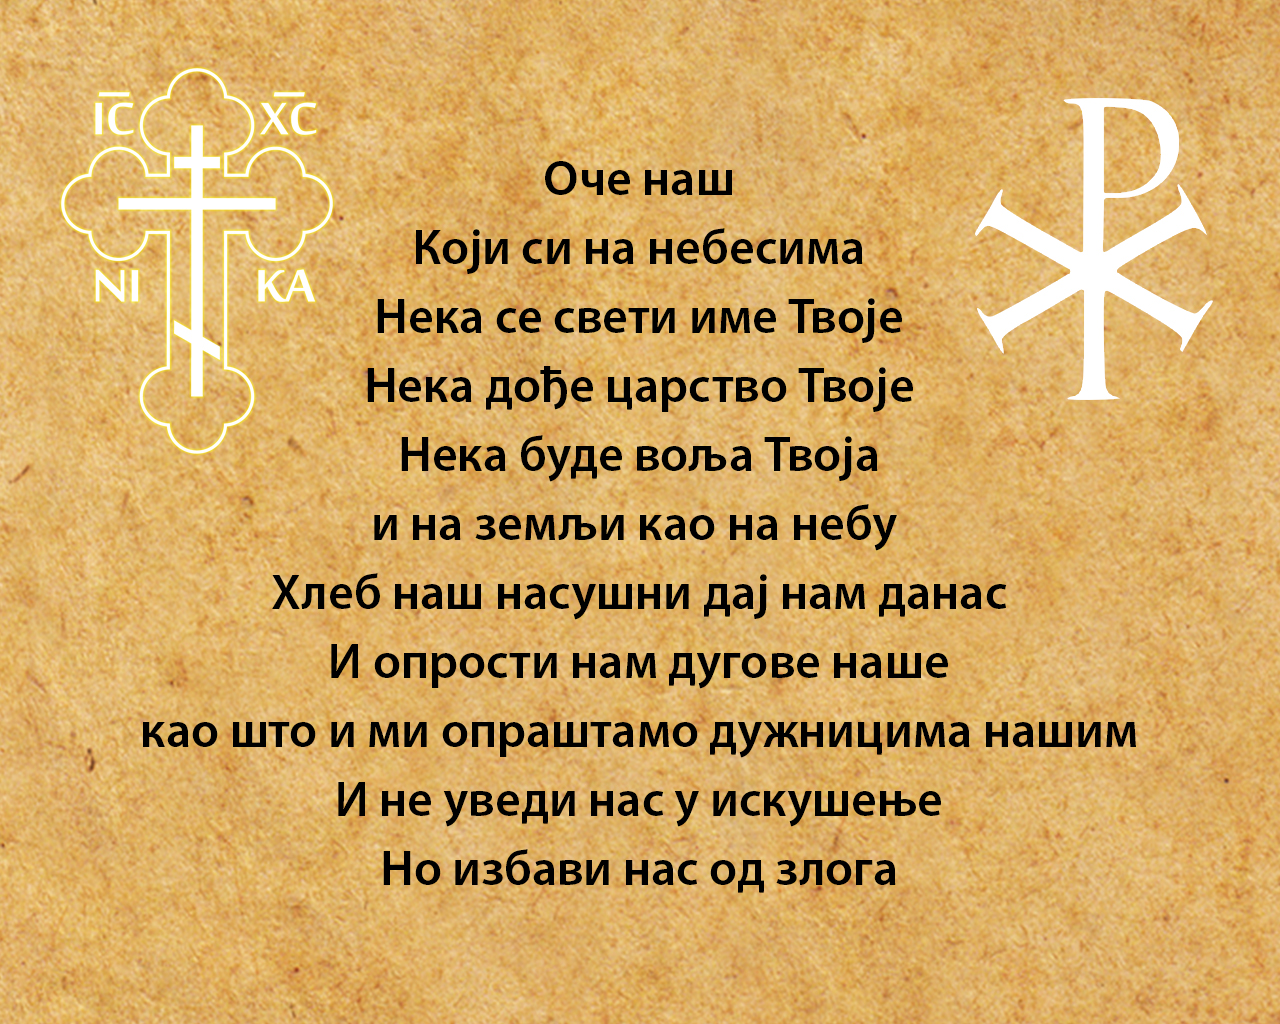 Свети Владика Николај – Оче наш